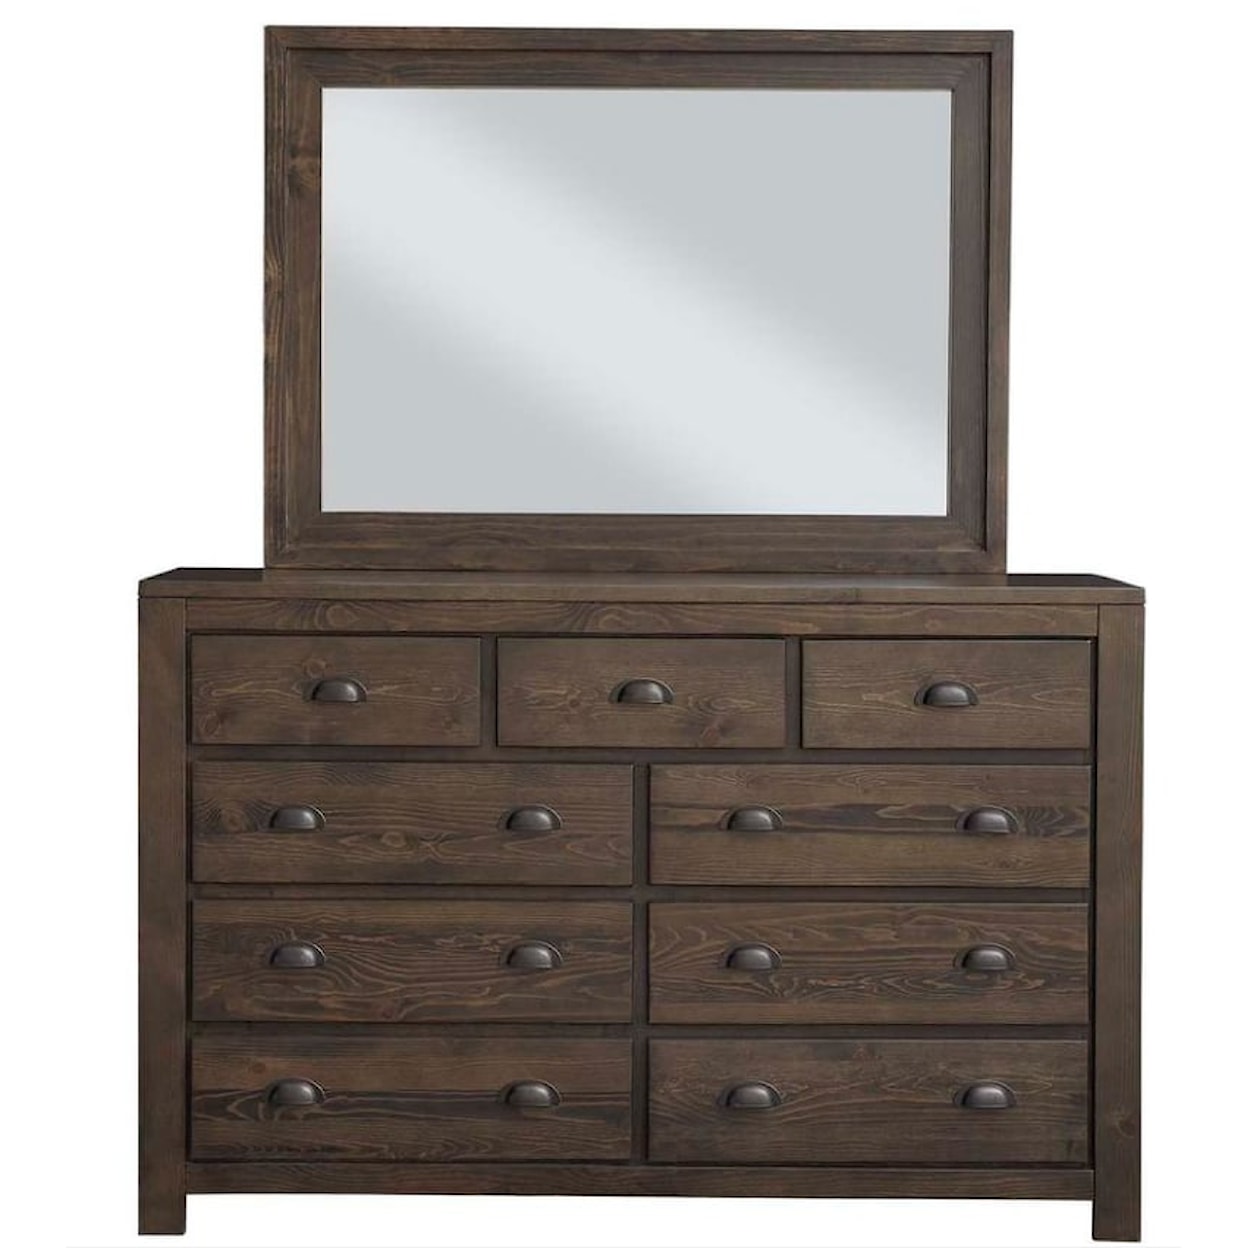 Progressive Furniture Falcon Bluff Mirror